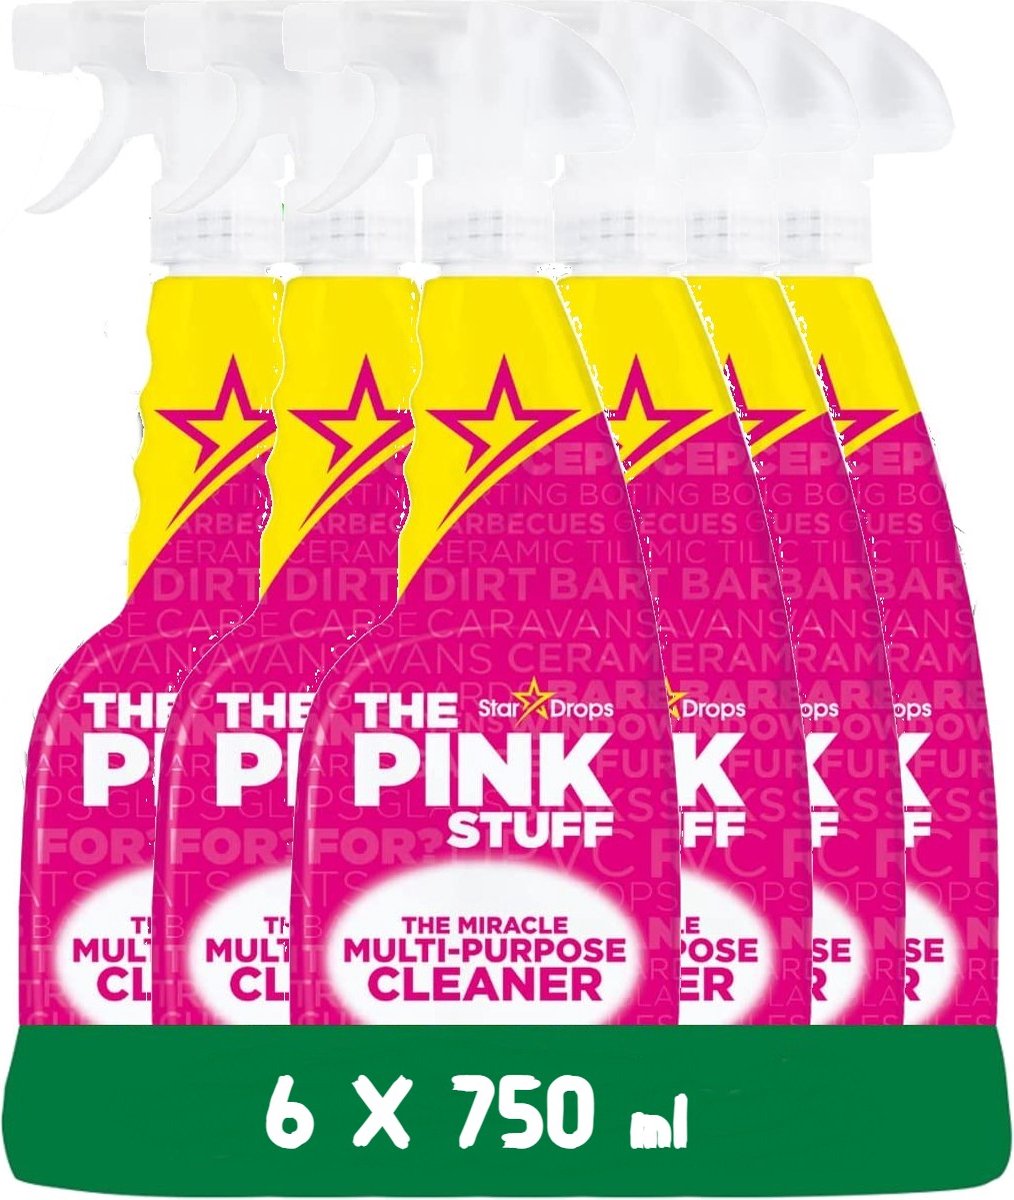 The Pink Stuff Spray detergente multiuso - Confezione economica da 6 x 750 ml - Rispettoso dell'ambiente